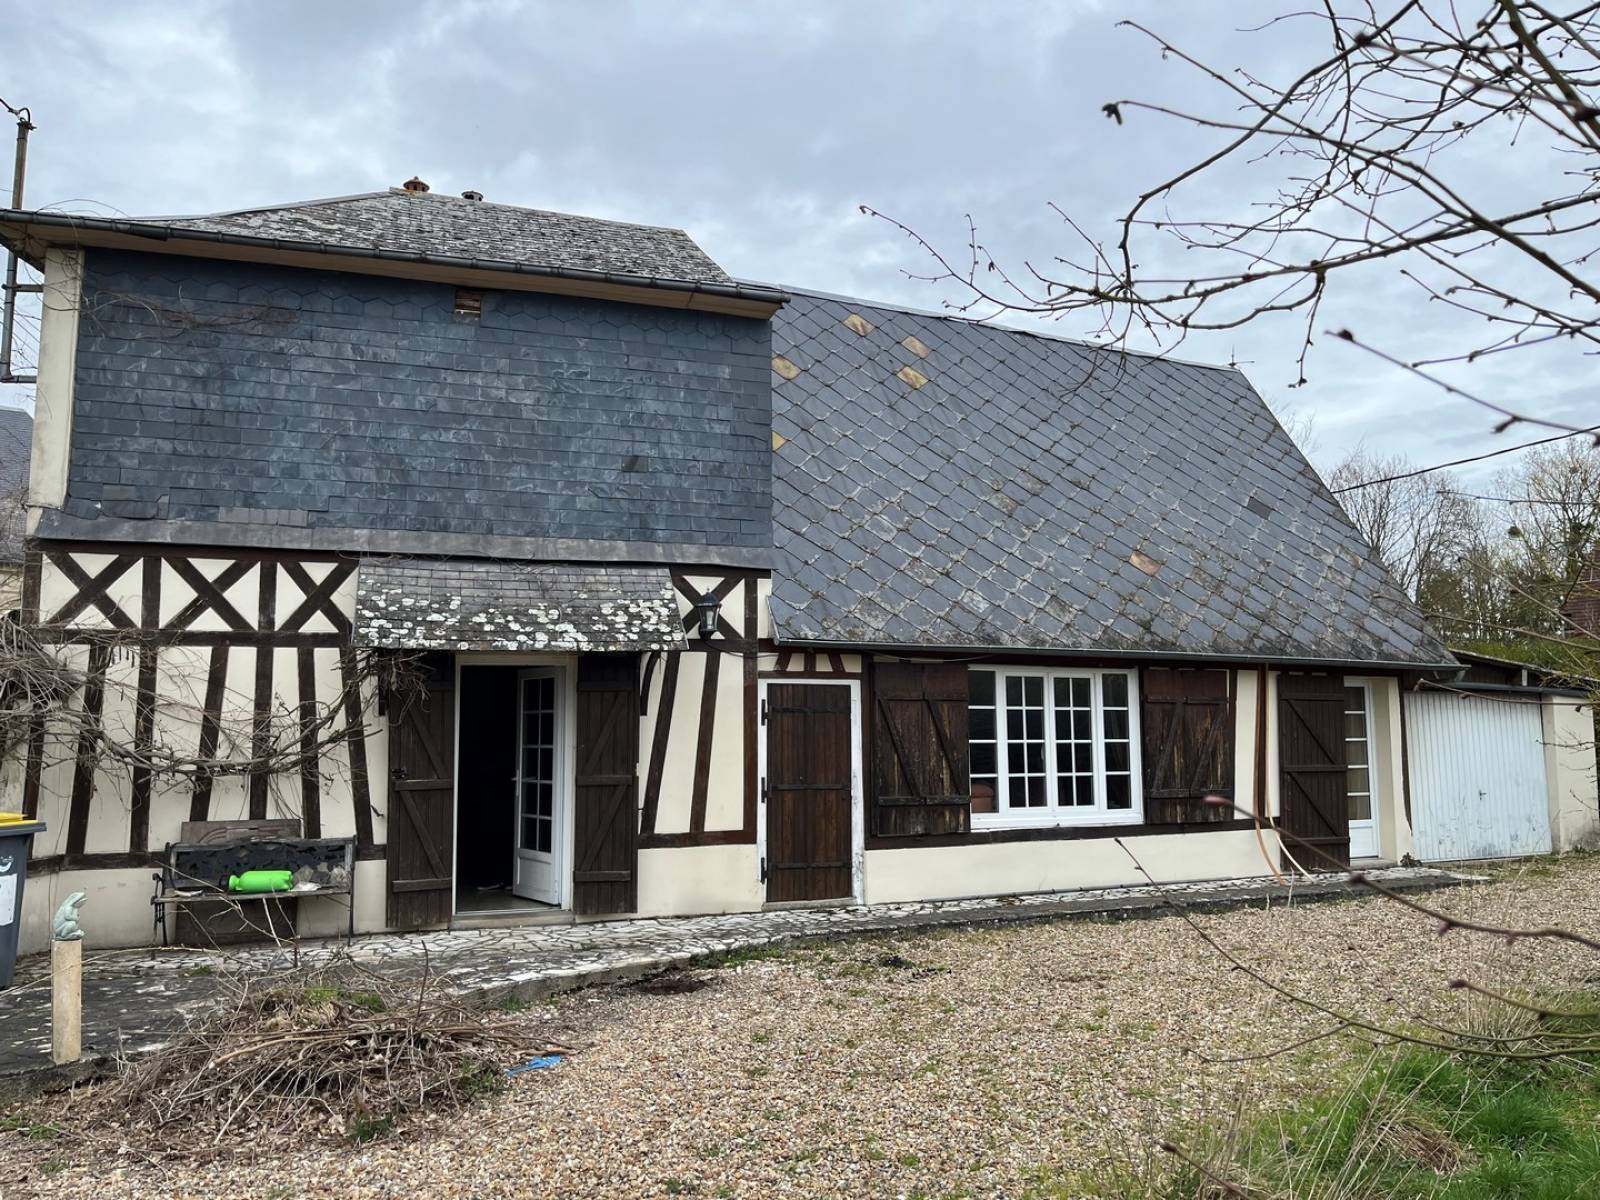 Maison normande à la vente proche d'Evreux  dans un village de campagne